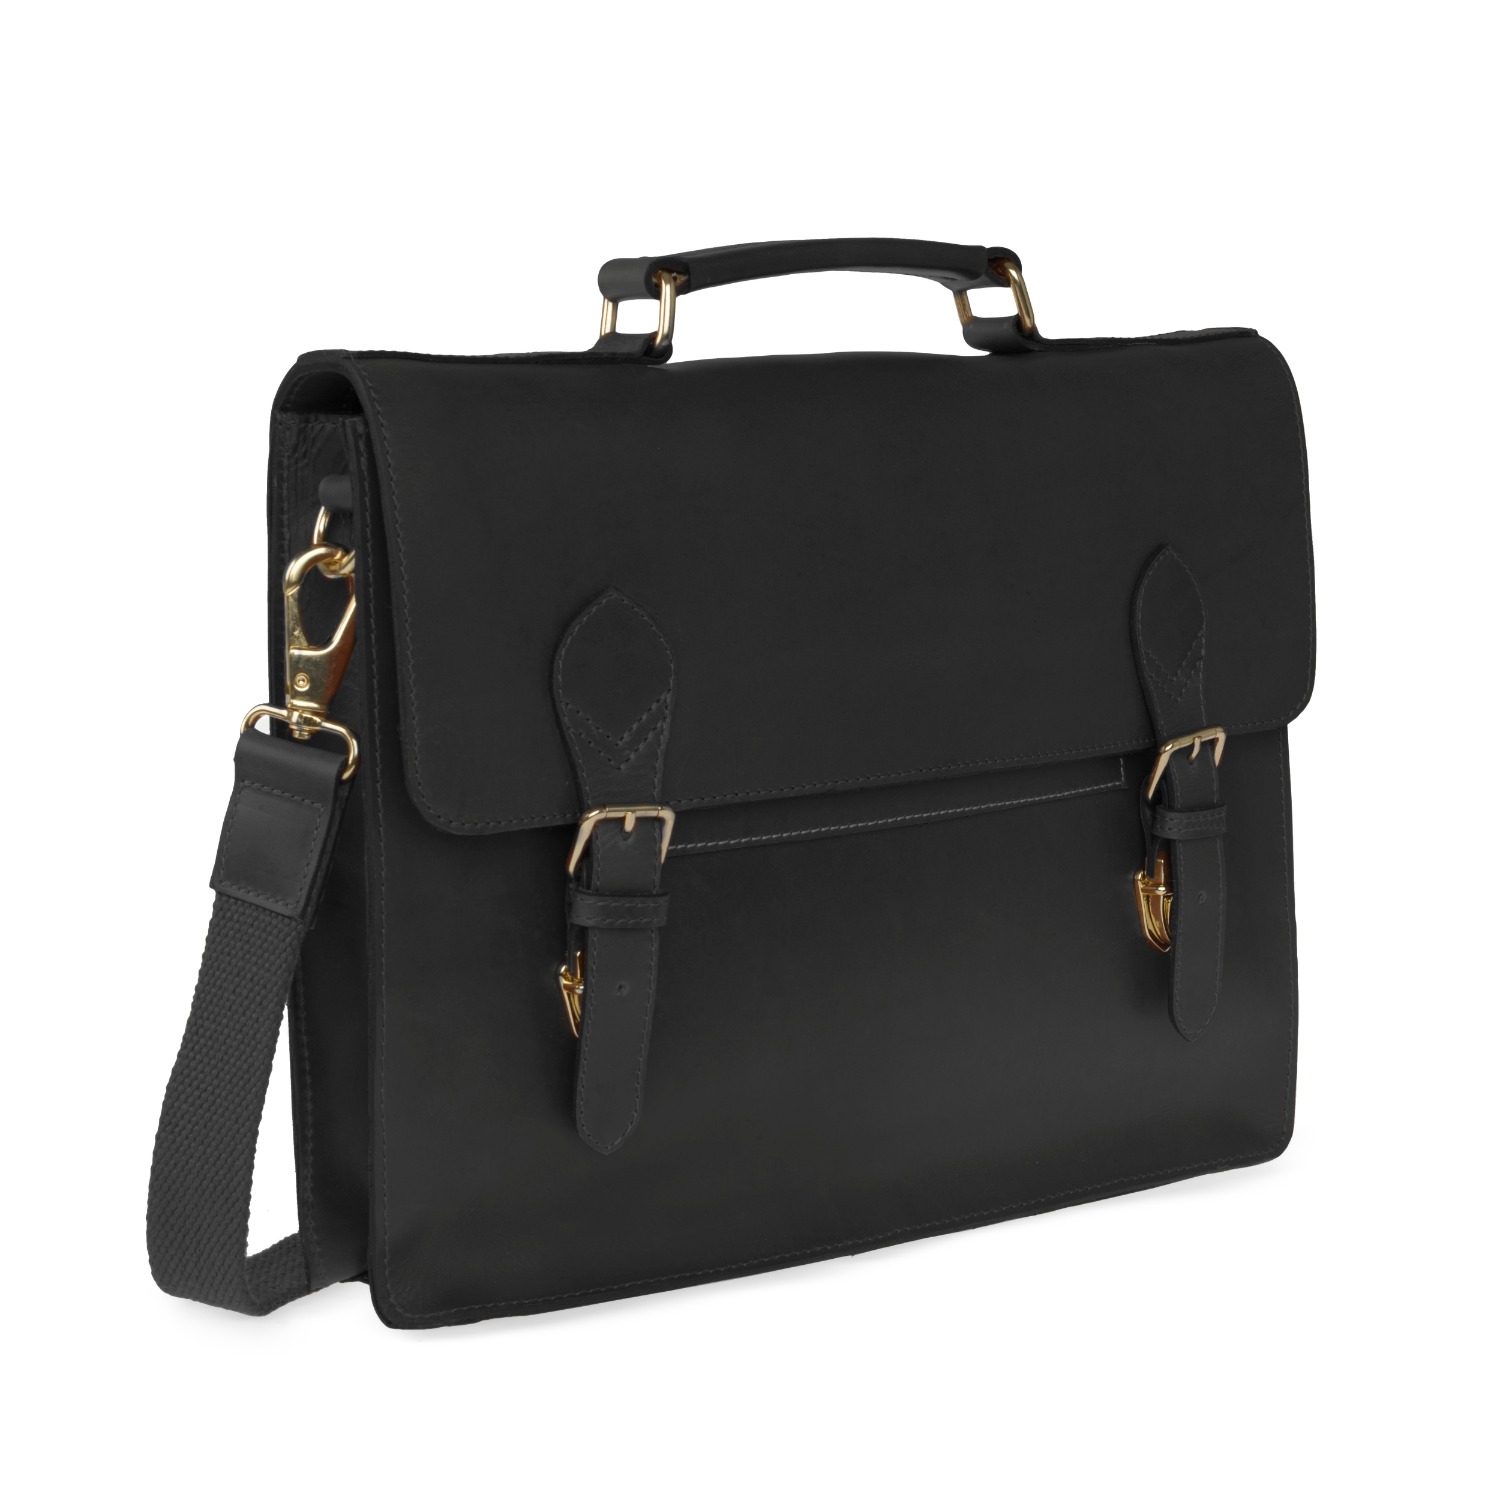 Luxe Black Leather Briefcase, VIDA VIDA